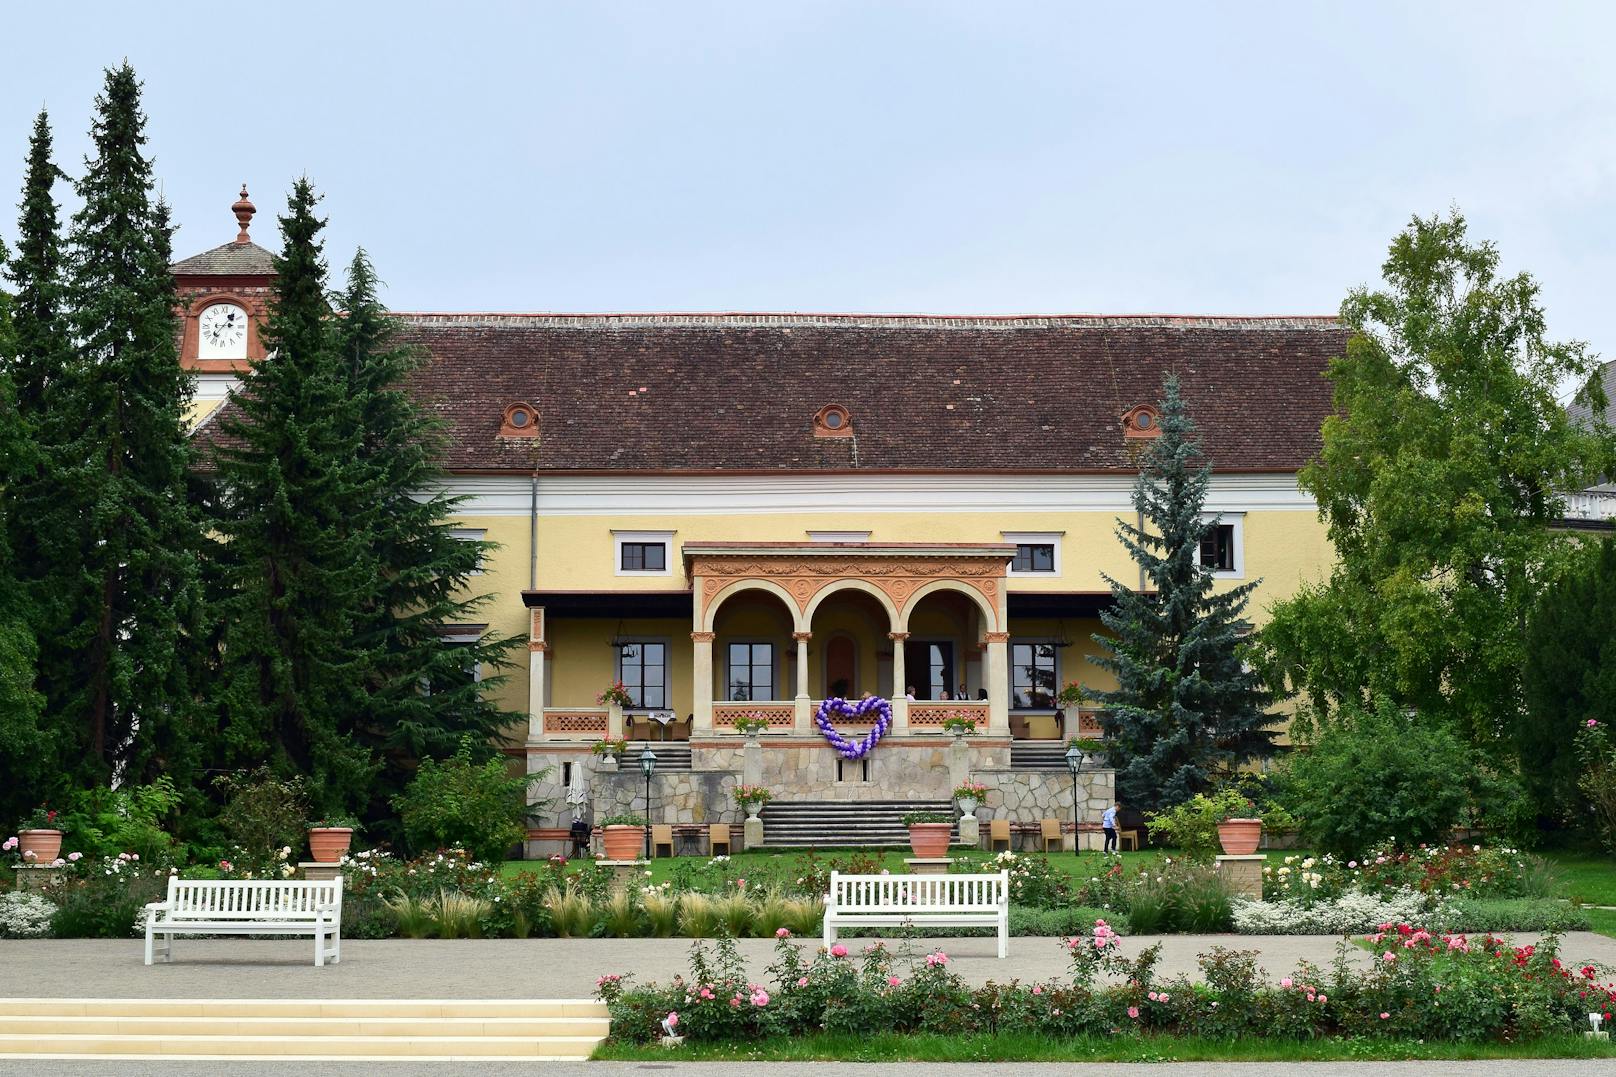 Hotel Schloss Weikersdorf: Die schöne Anlage in Baden